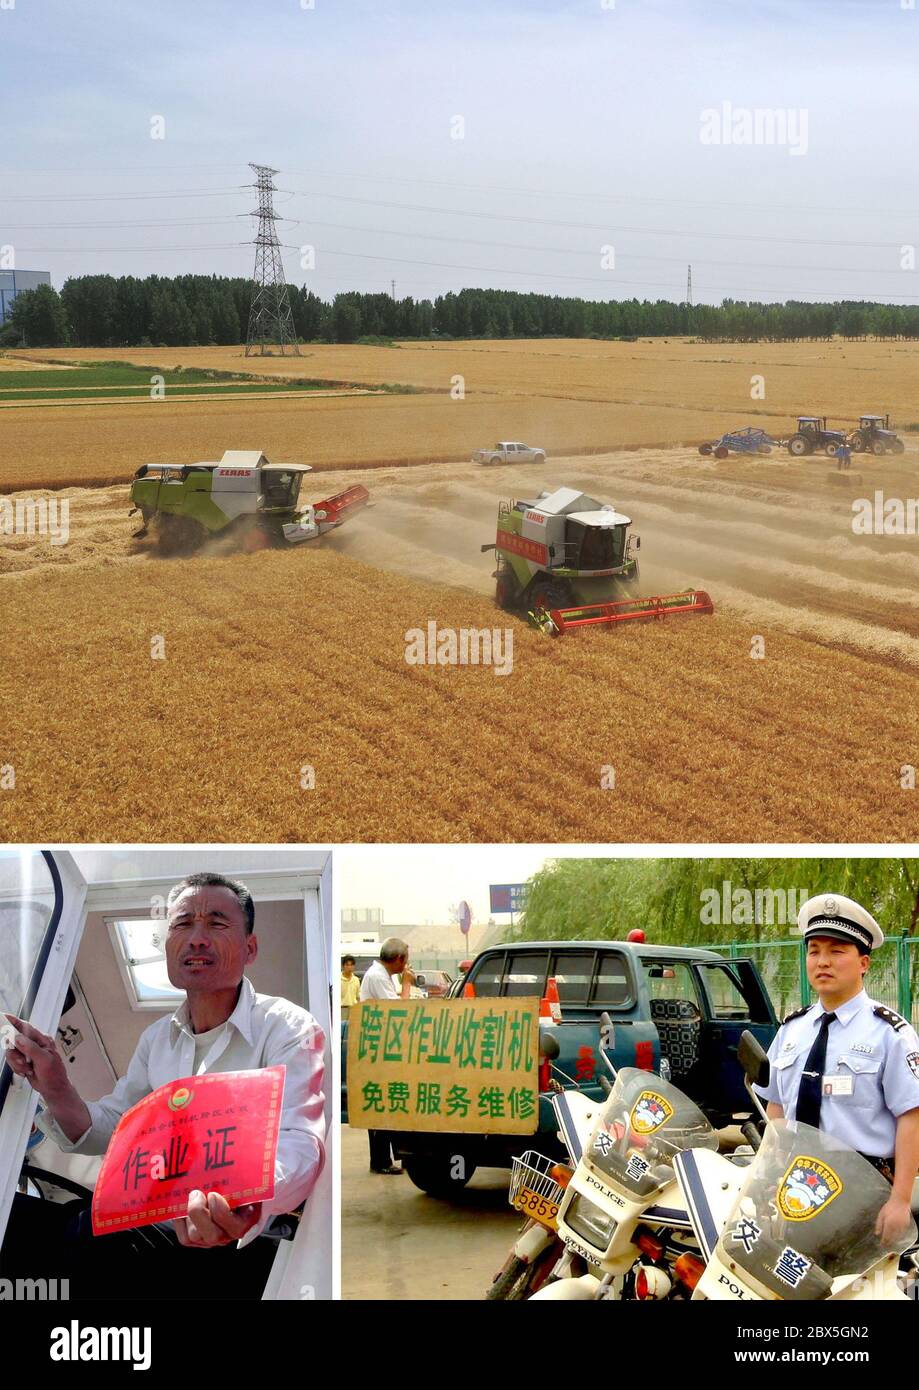 (200605) -- ZHENGZHOU, 5 juin 2020 (Xinhua) -- photo combinée montre les machines agricoles qui travaillent sur le terrain dans le village d'Anzhong, ville de Xiaoyangying, dans la ville de Dengzhou, province de Henan en Chine centrale (UP, photo aérienne prise le 26 mai 2020 par Feng Dapeng), Wen Tonghu de Handan, province de Hebei, En présentant le certificat d'opération transrégionale de récolte délivré par le Ministère de l'agriculture (à gauche, en bas, photo du dossier prise le 16 mai 2004 par Zhu Xiang) et la police de la circulation saluant la moissonneuse transrégionale qui passera à la périphérie de la ville de Xinxiang, dans le centre de la Chine HE Banque D'Images